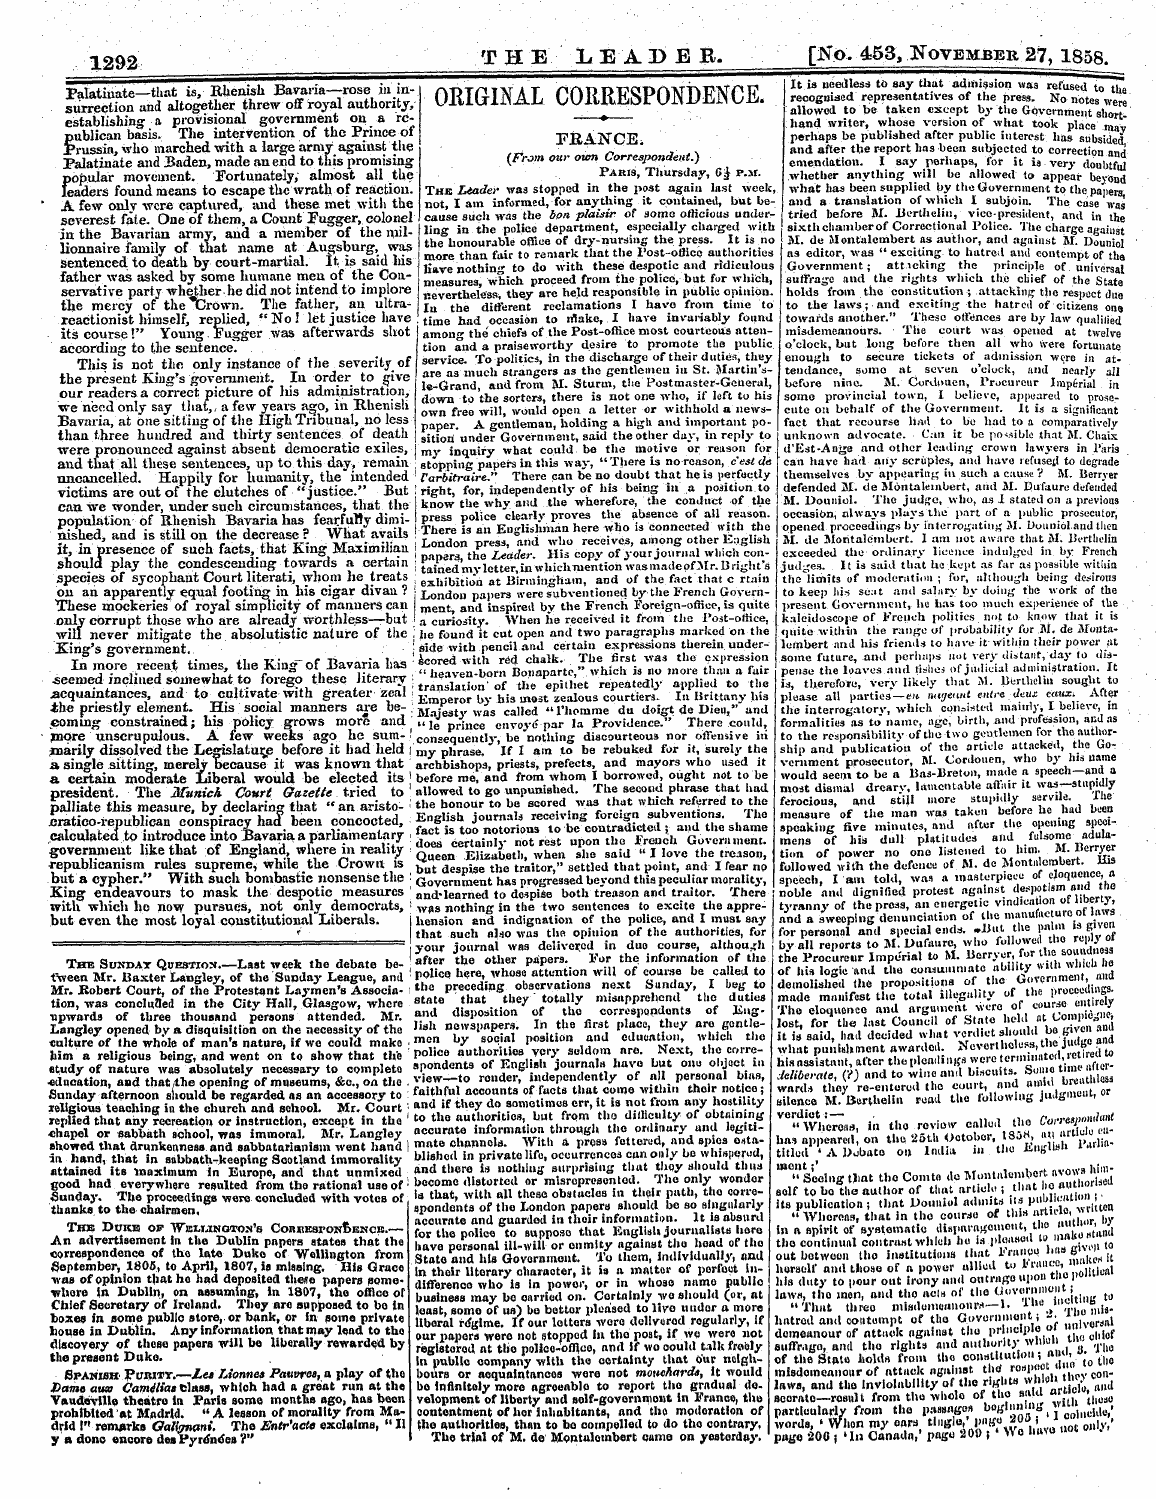 Leader (1850-1860): jS F Y, 2nd edition - Original Correspondence.